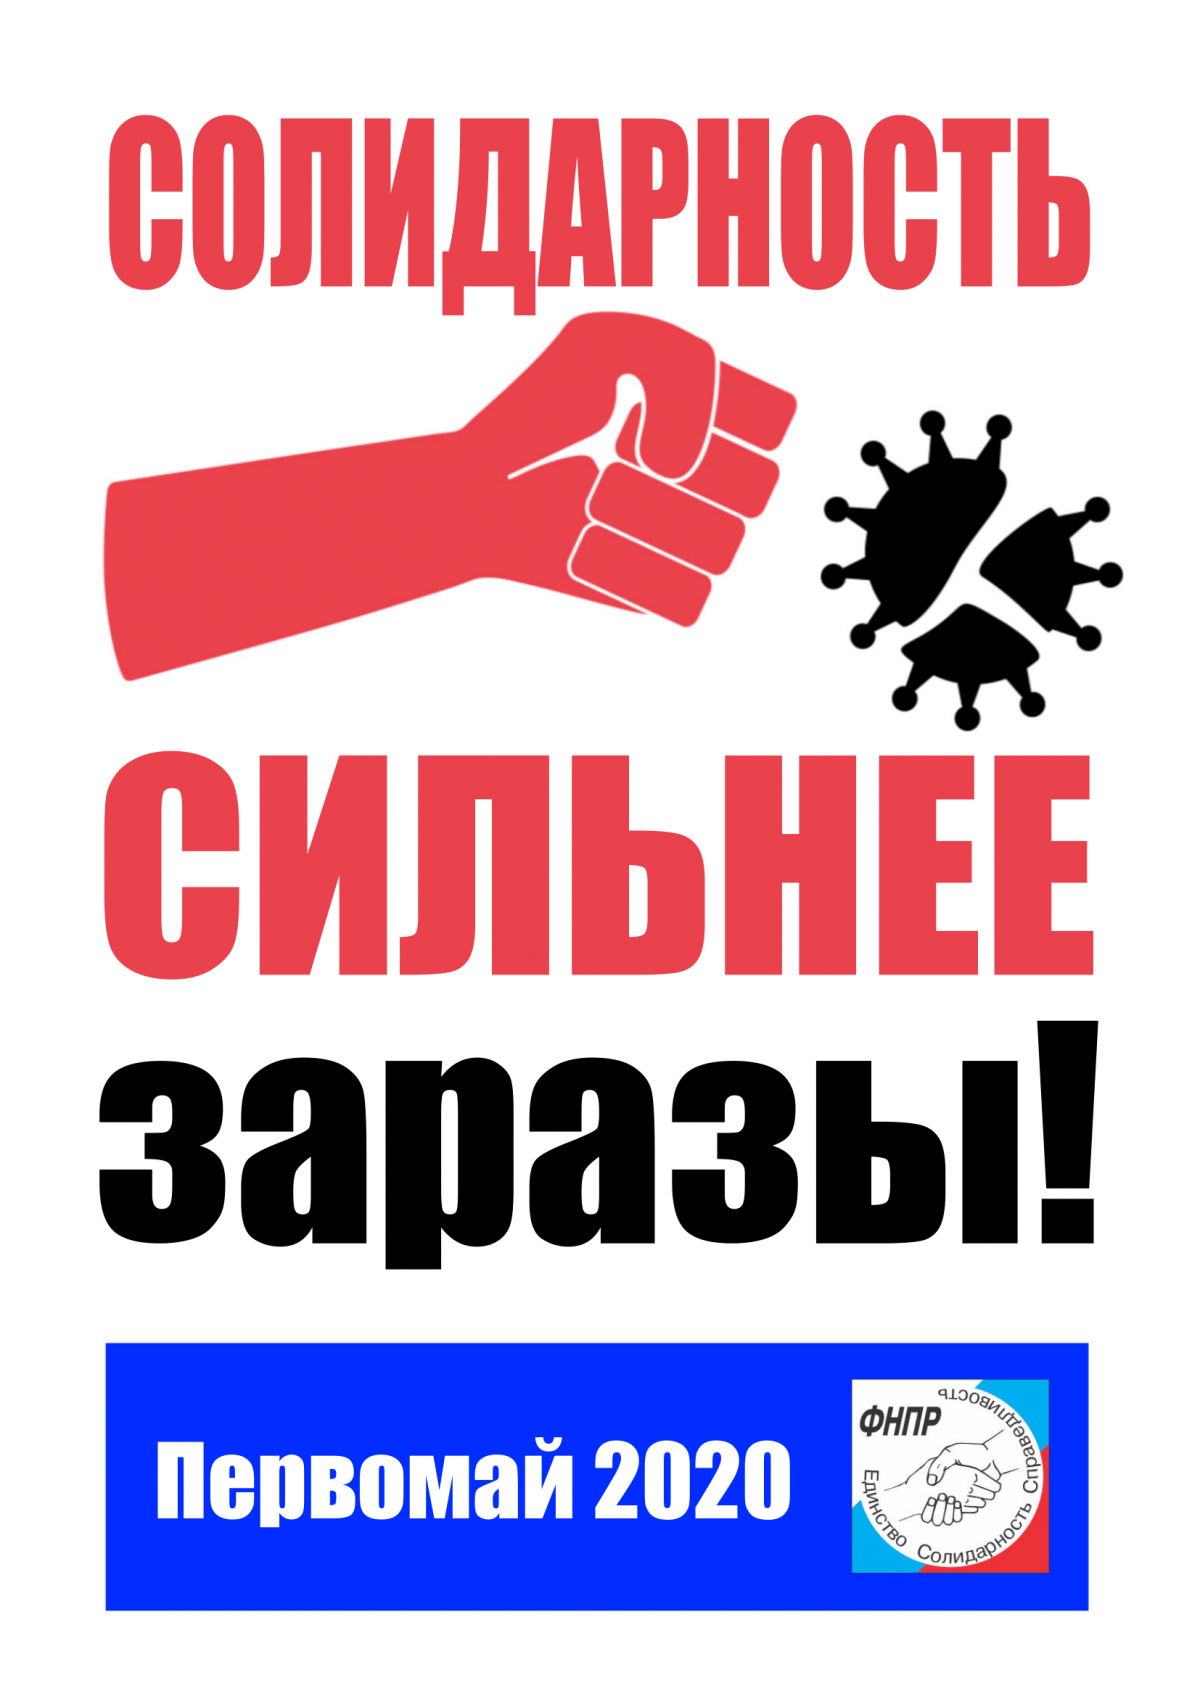 Голосуем за Первомайскую Резолюцию ФНПР  - Новости организации